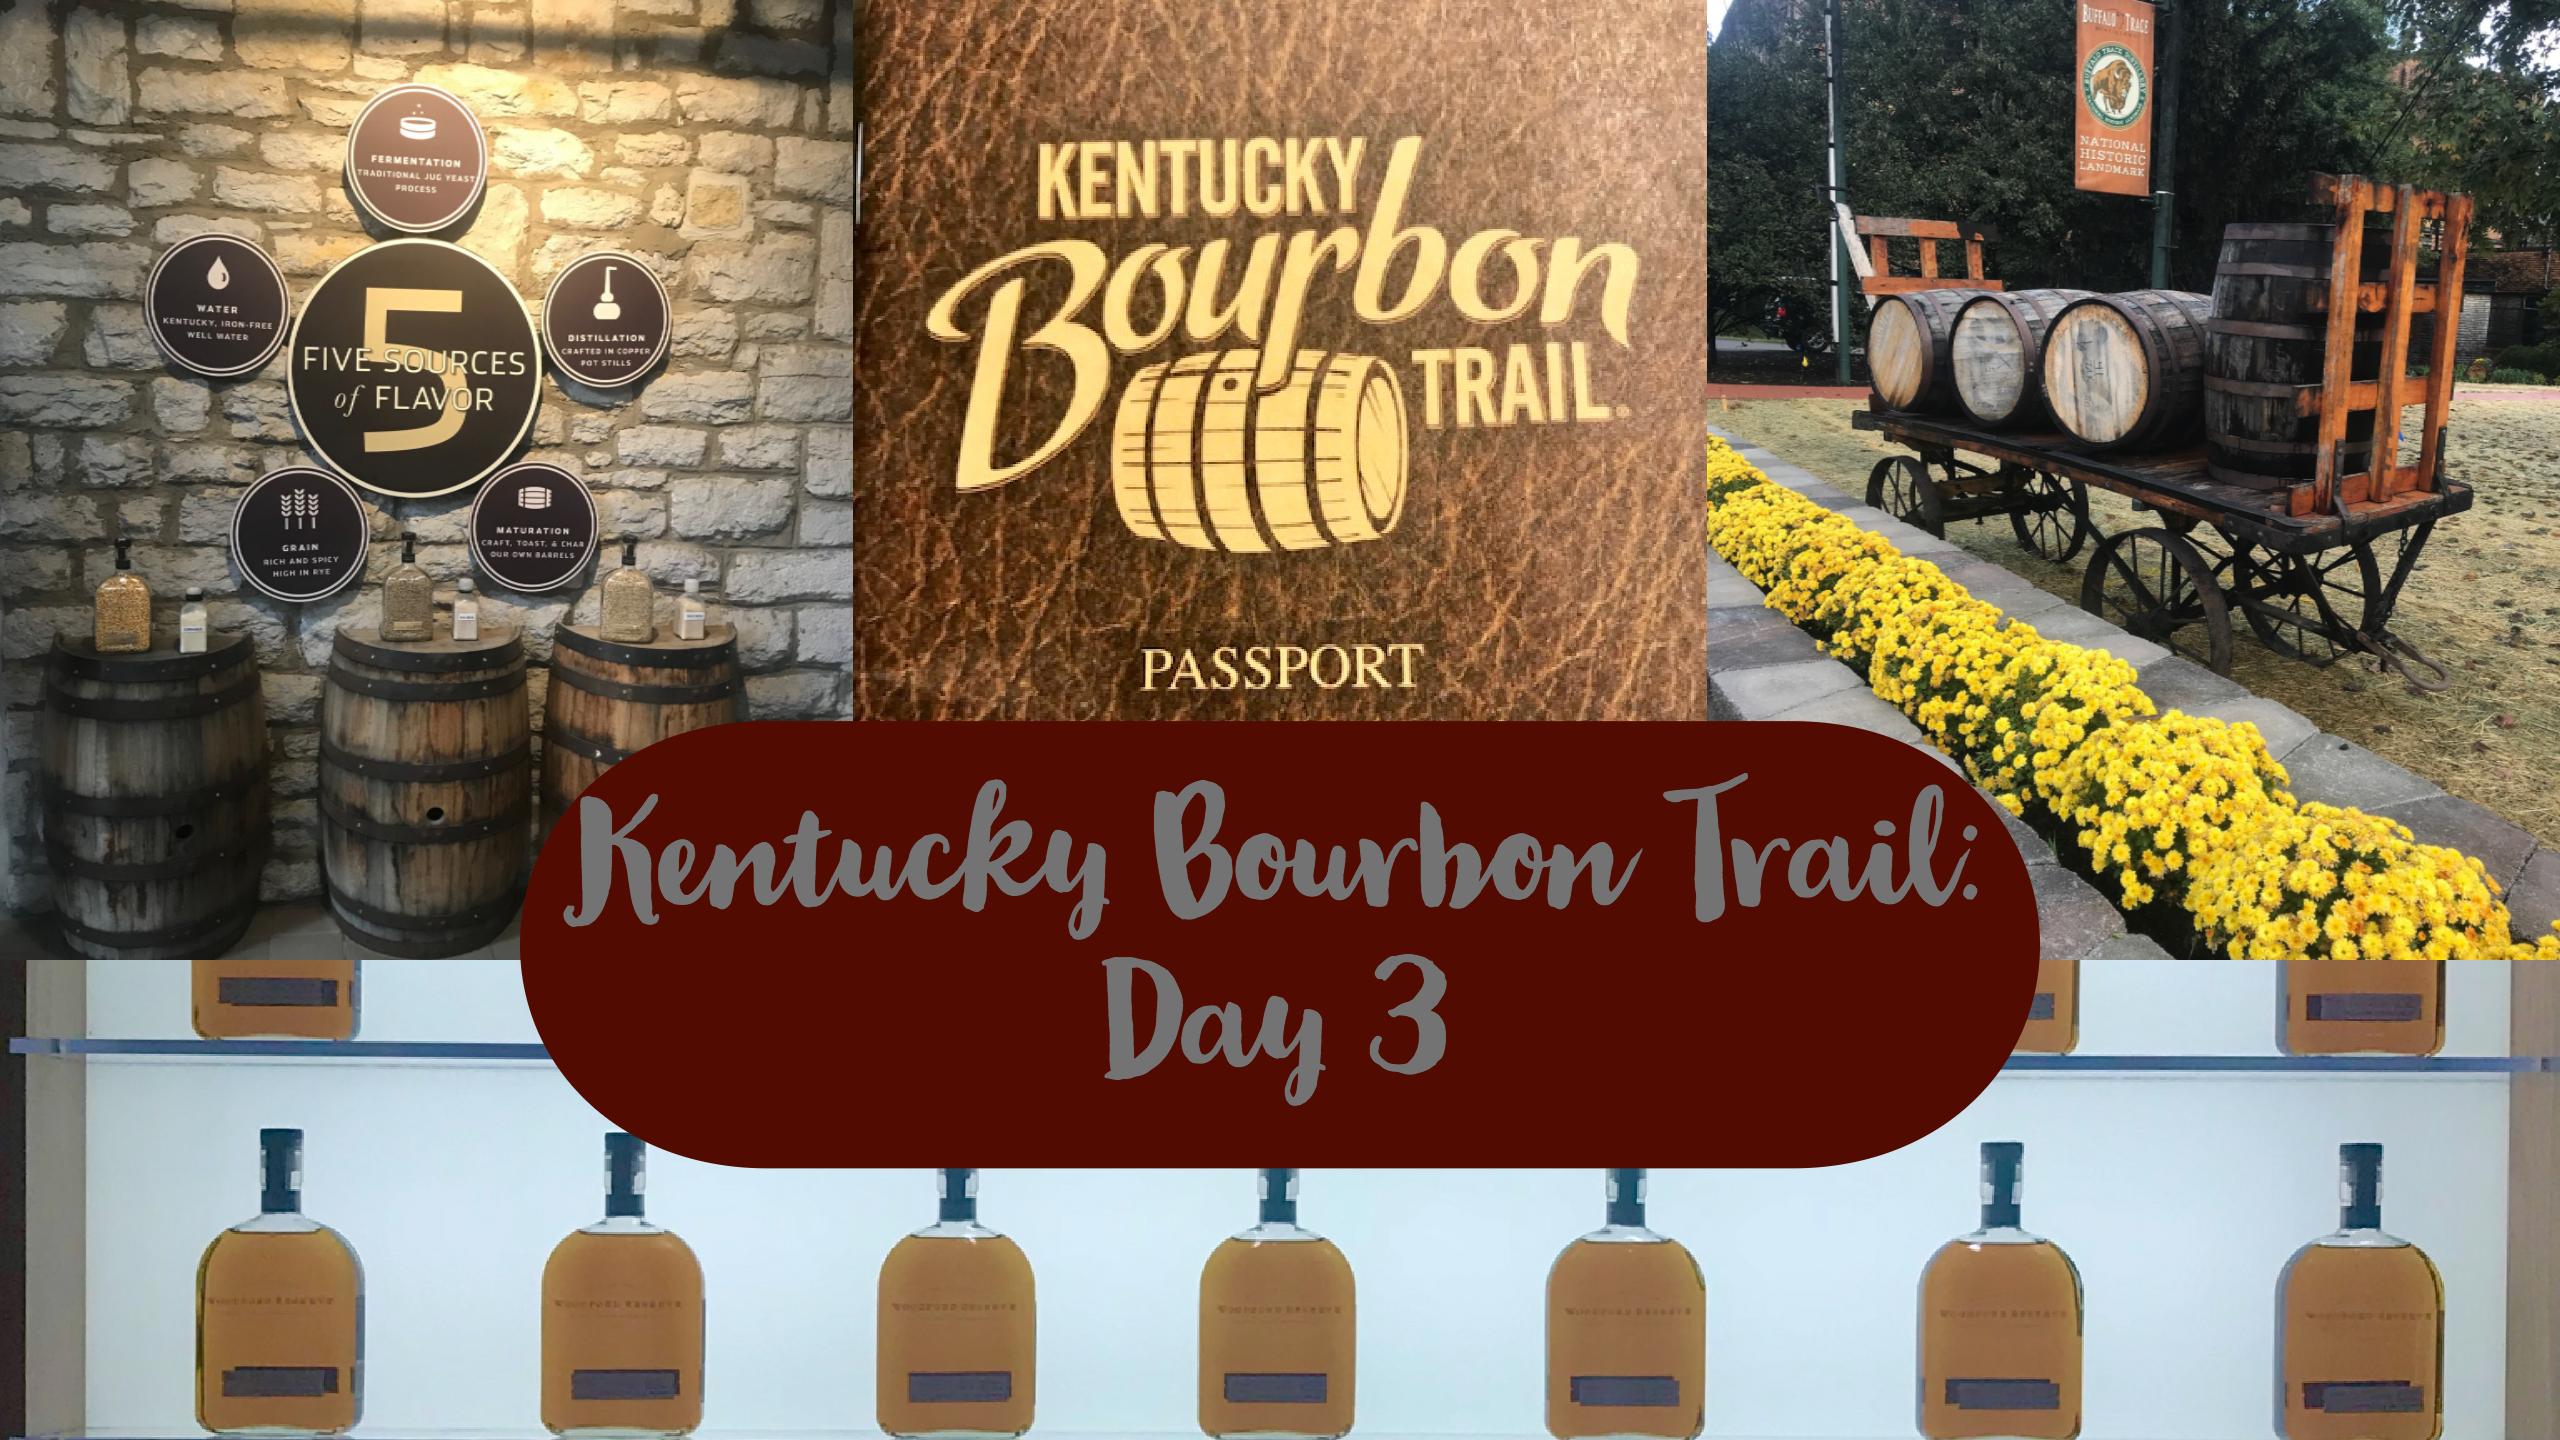 Kentucky Bourbon Trail Day 3